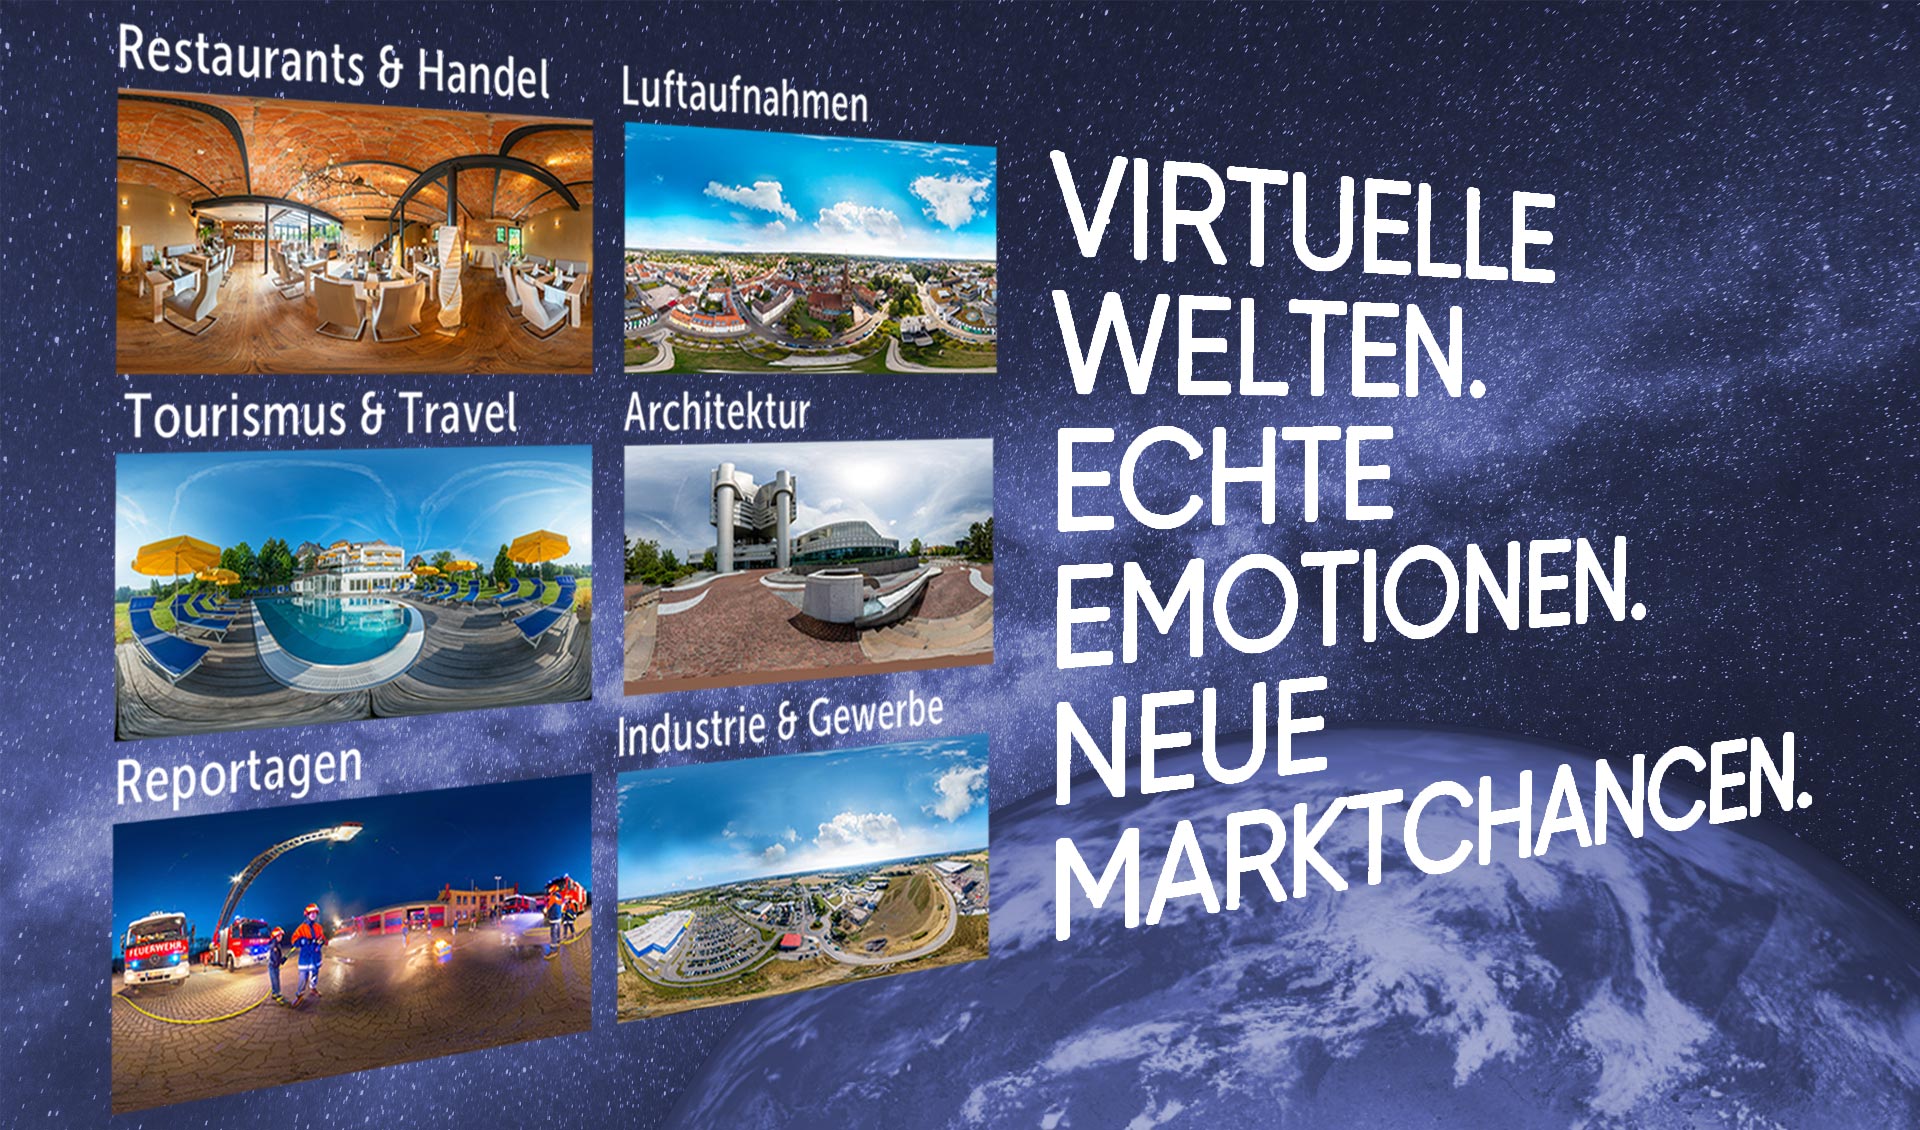 virtuelle-welten-echte-emotionen-neue-marktchancen-mit-vr-easy-und-360-touren_v02